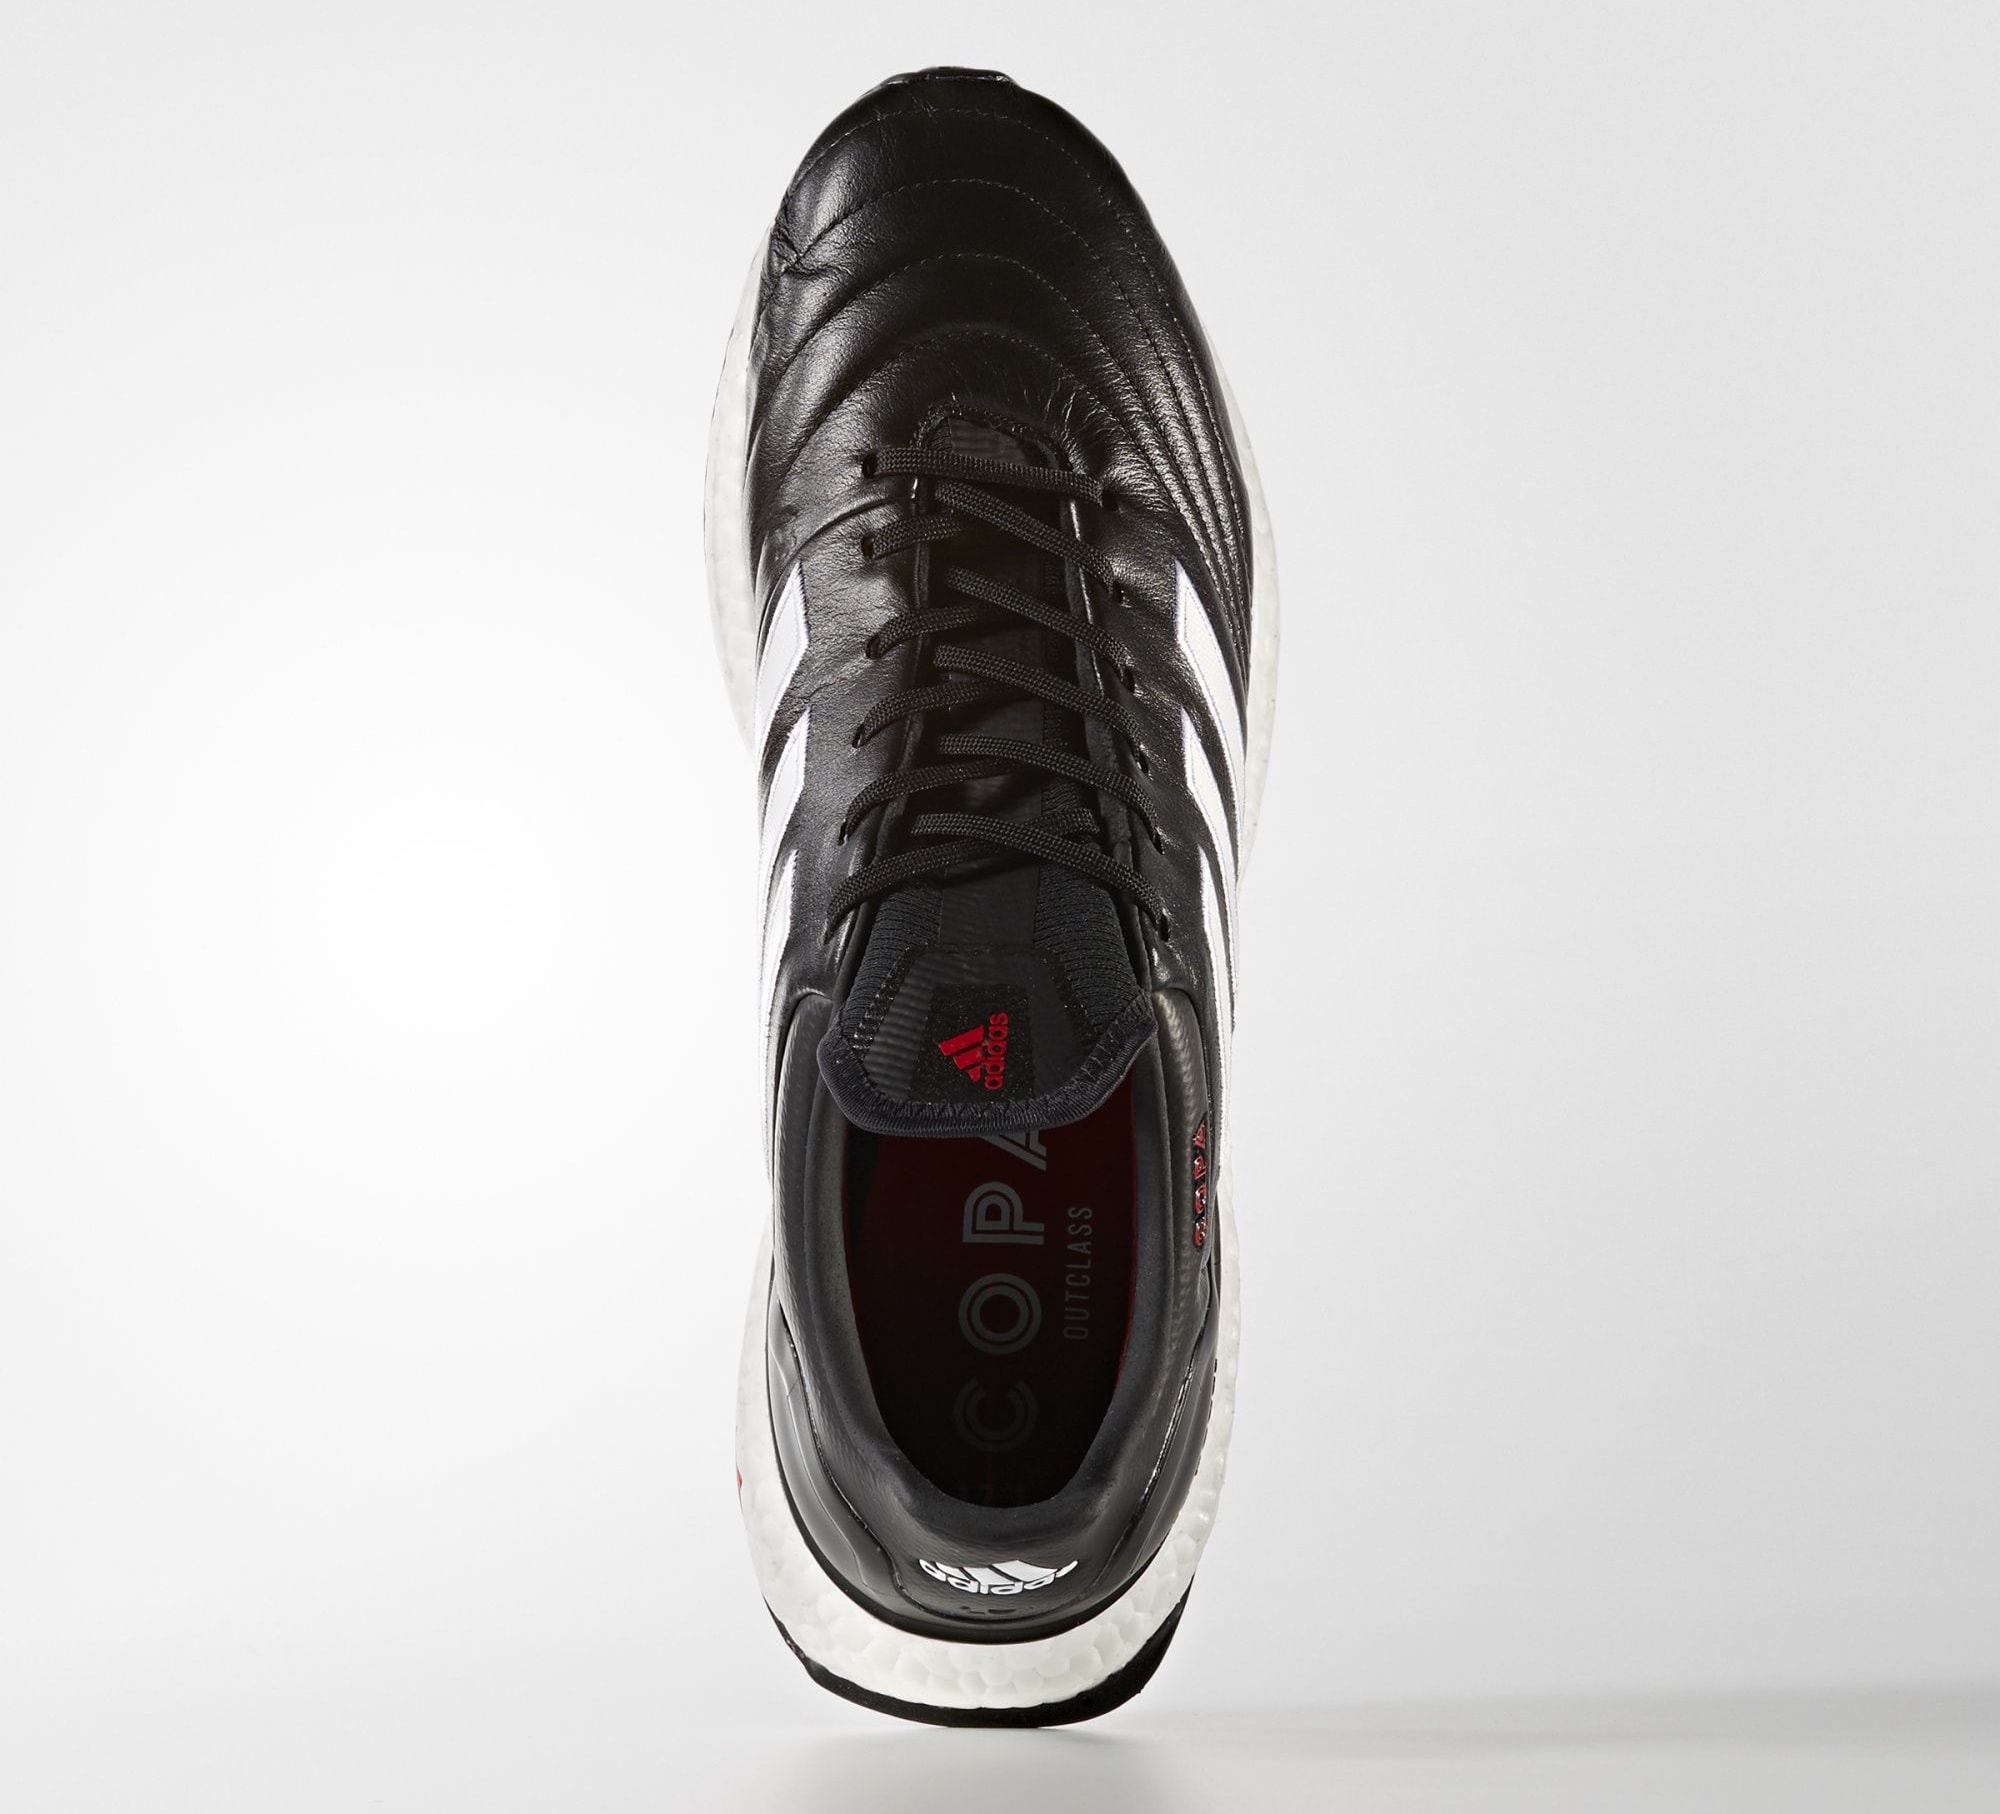 adidas copa 17.1 ultra boost release date